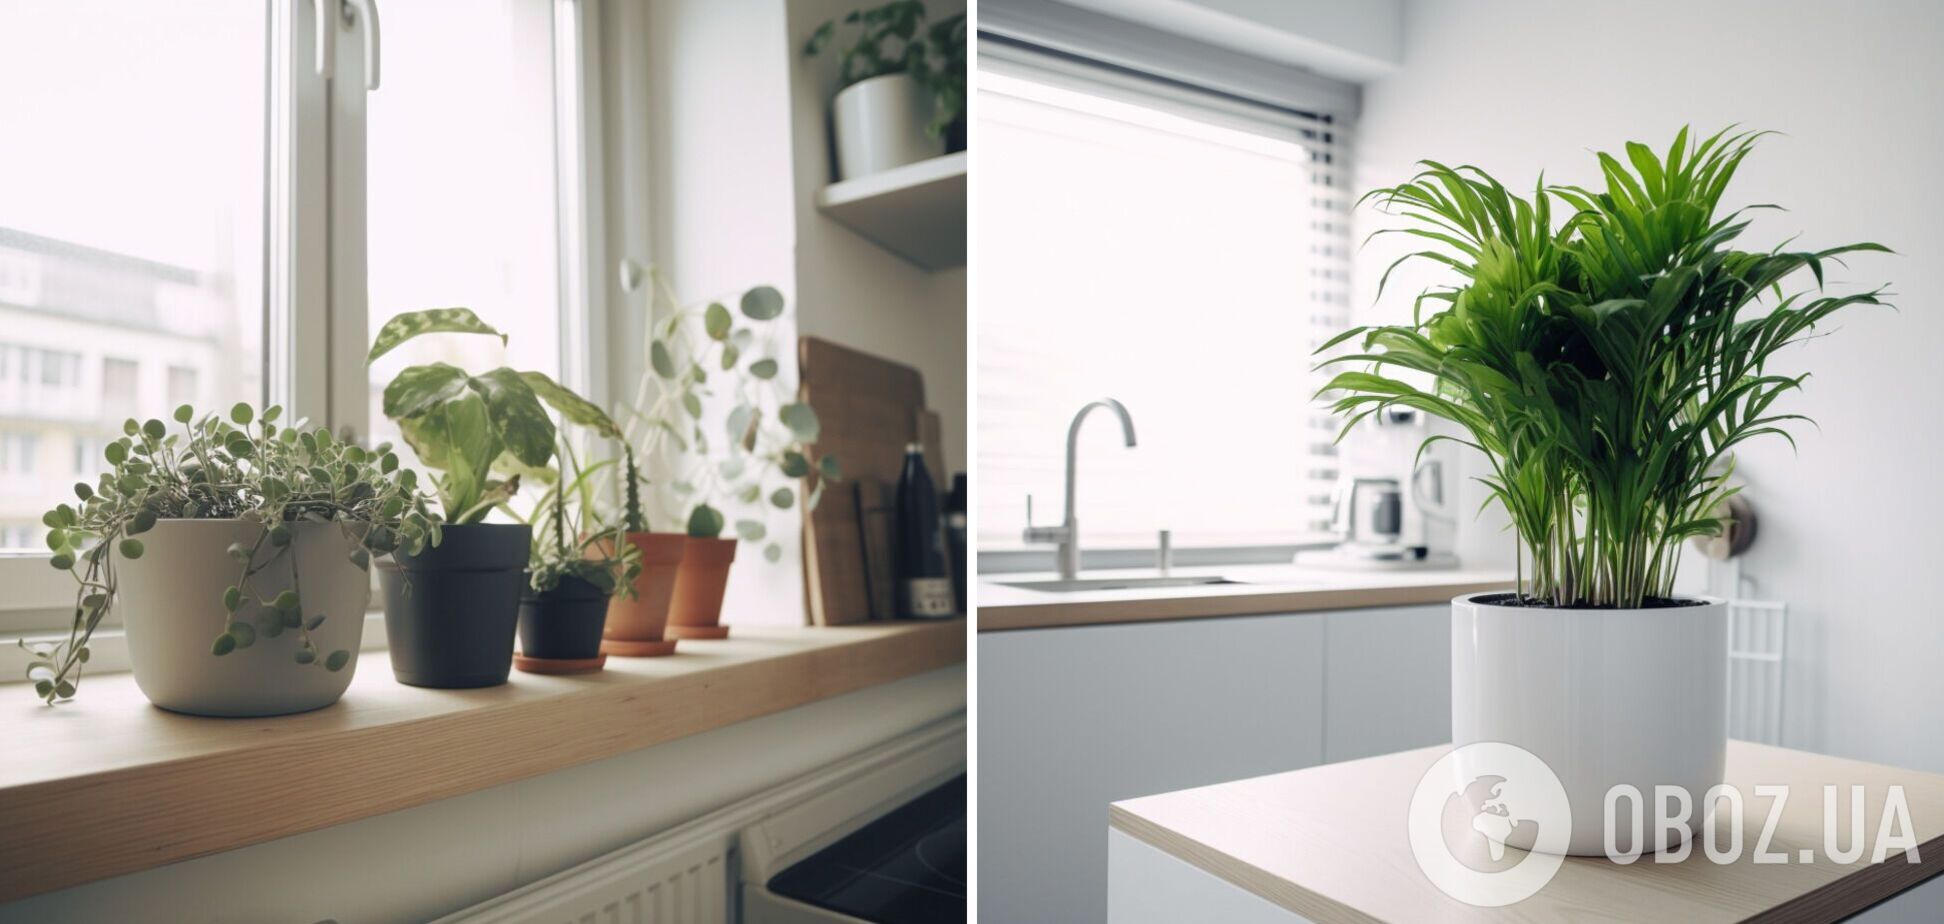 Быстро погибнут: какие комнатные растения нельзя держать на кухне